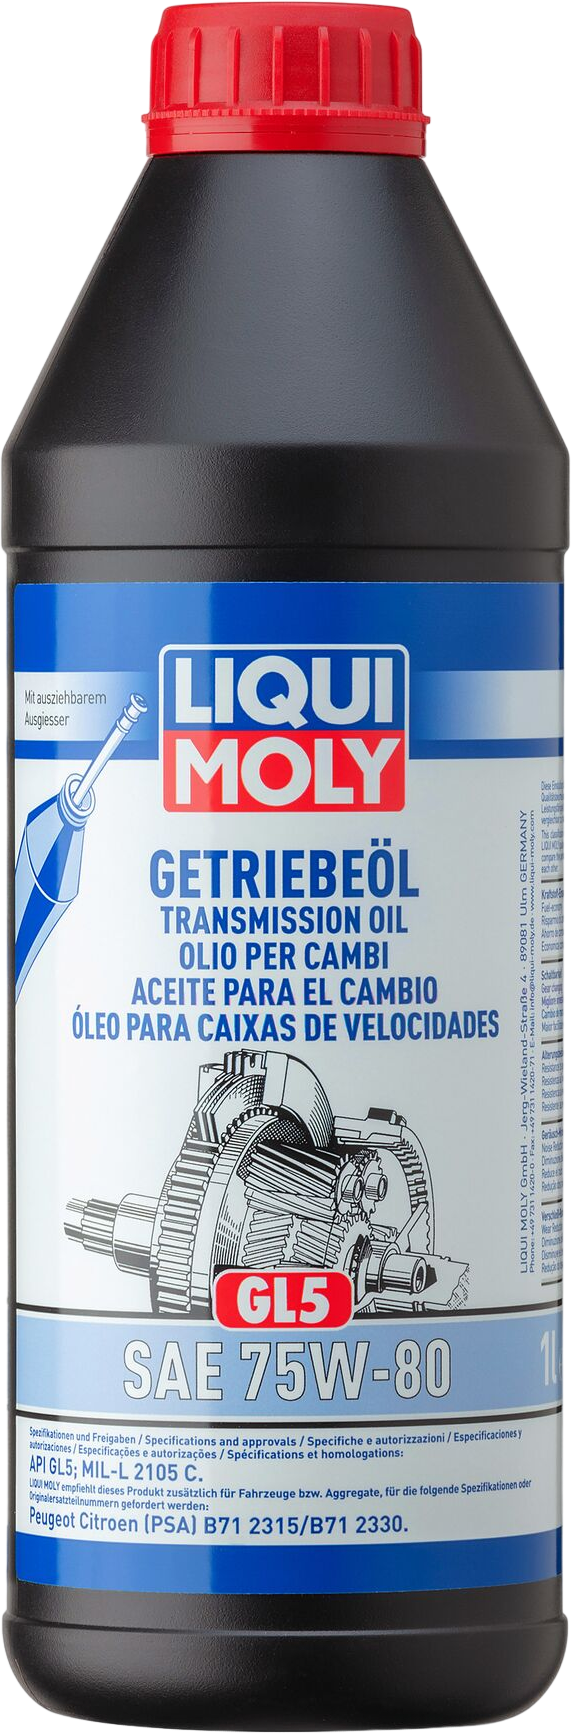 Liqui Moly Transmissieolie (GL5) 75W-80, 1 lt